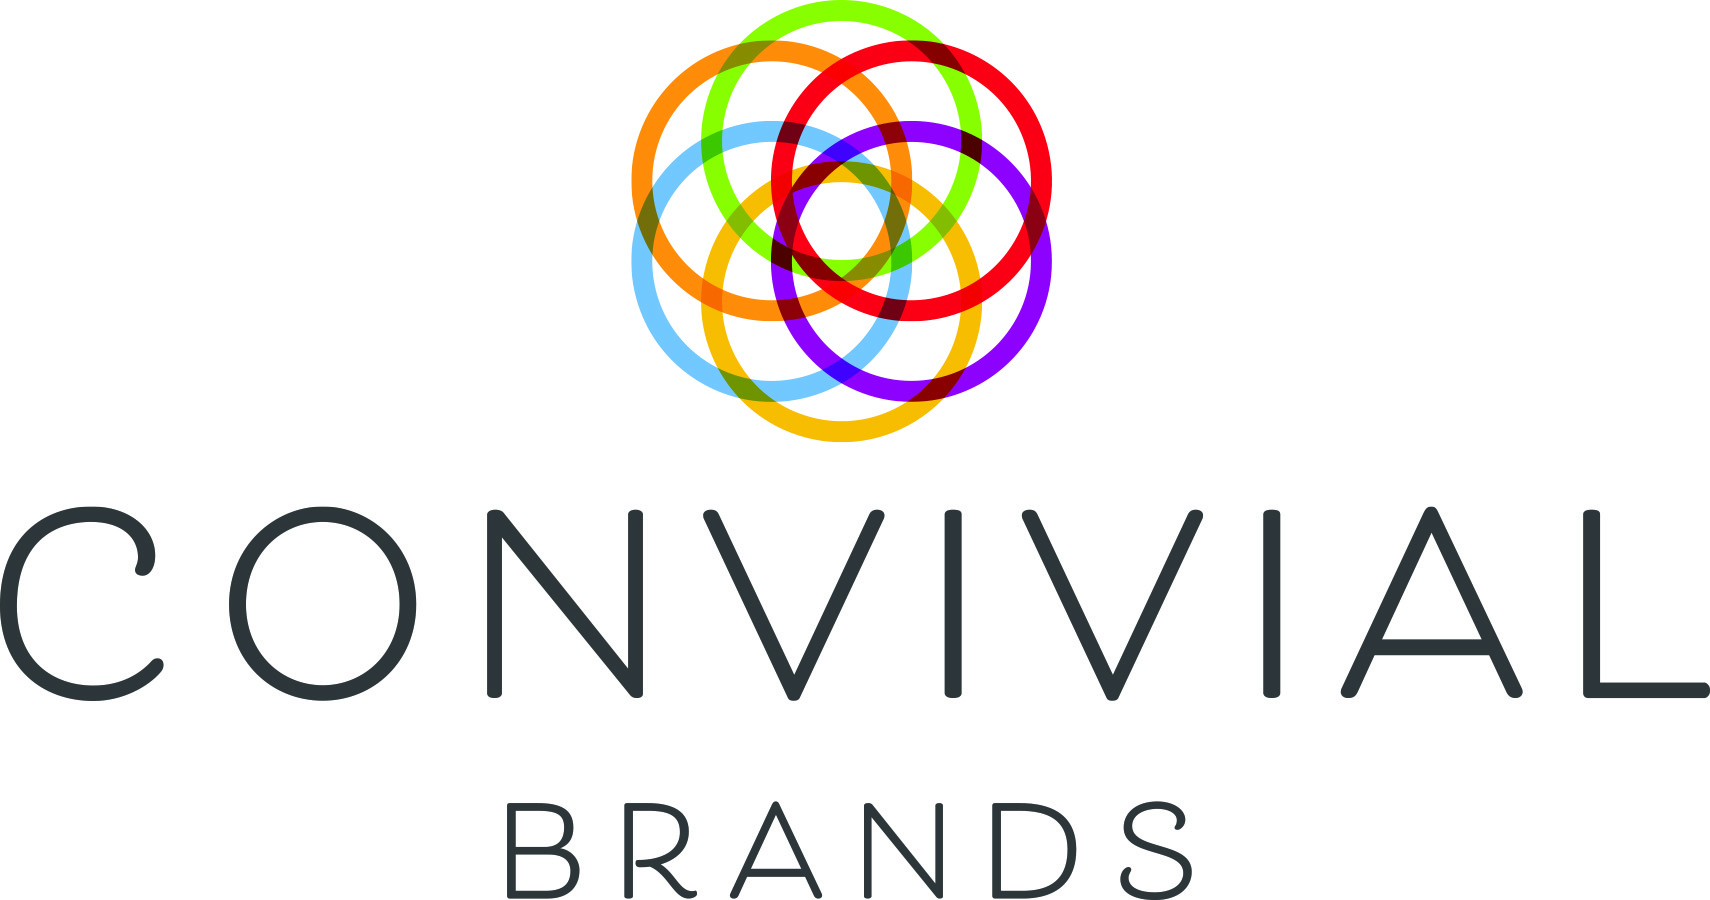 Convivial Brands